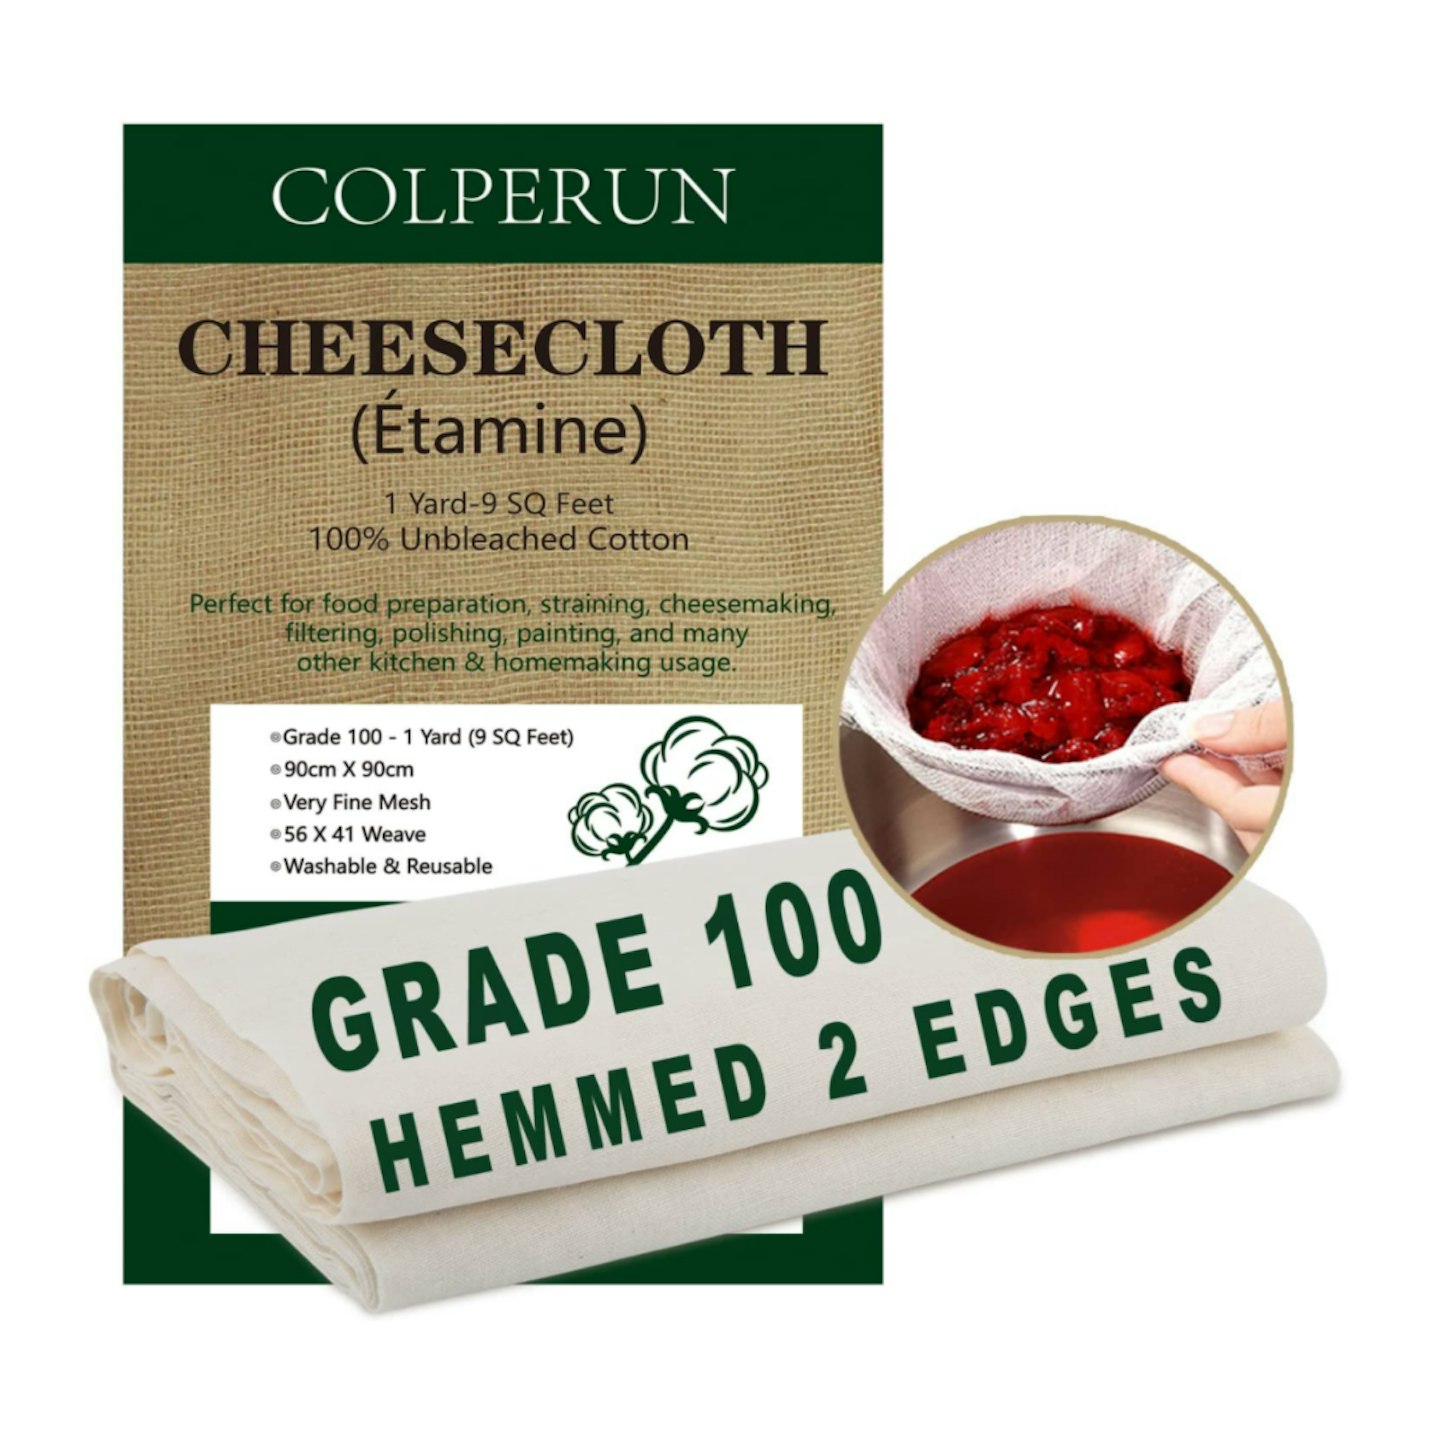 Colperun Cheesecloth, Grade 100, 9 Sq Feet